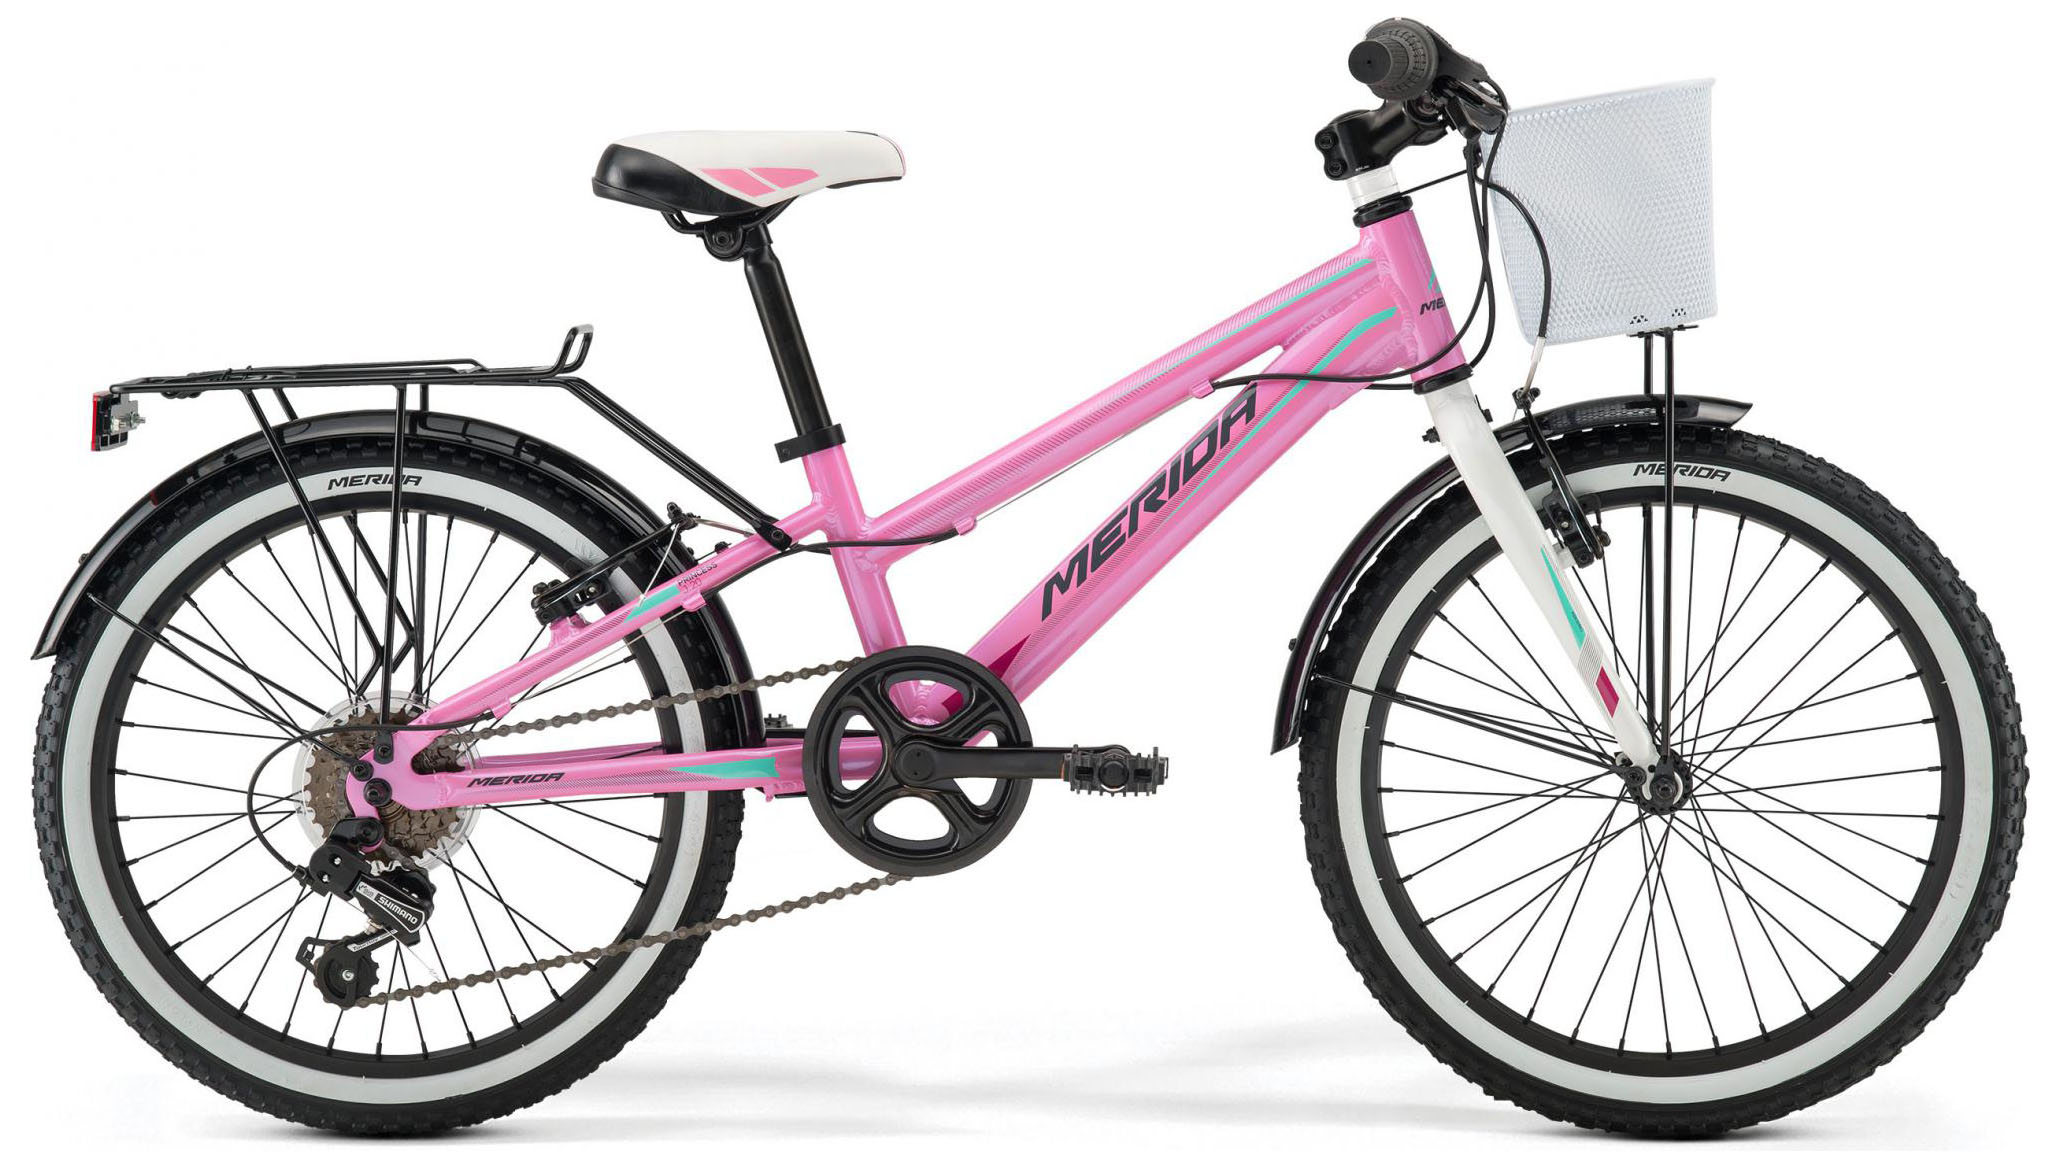  Отзывы о Детском велосипеде Merida Princess J20 2019